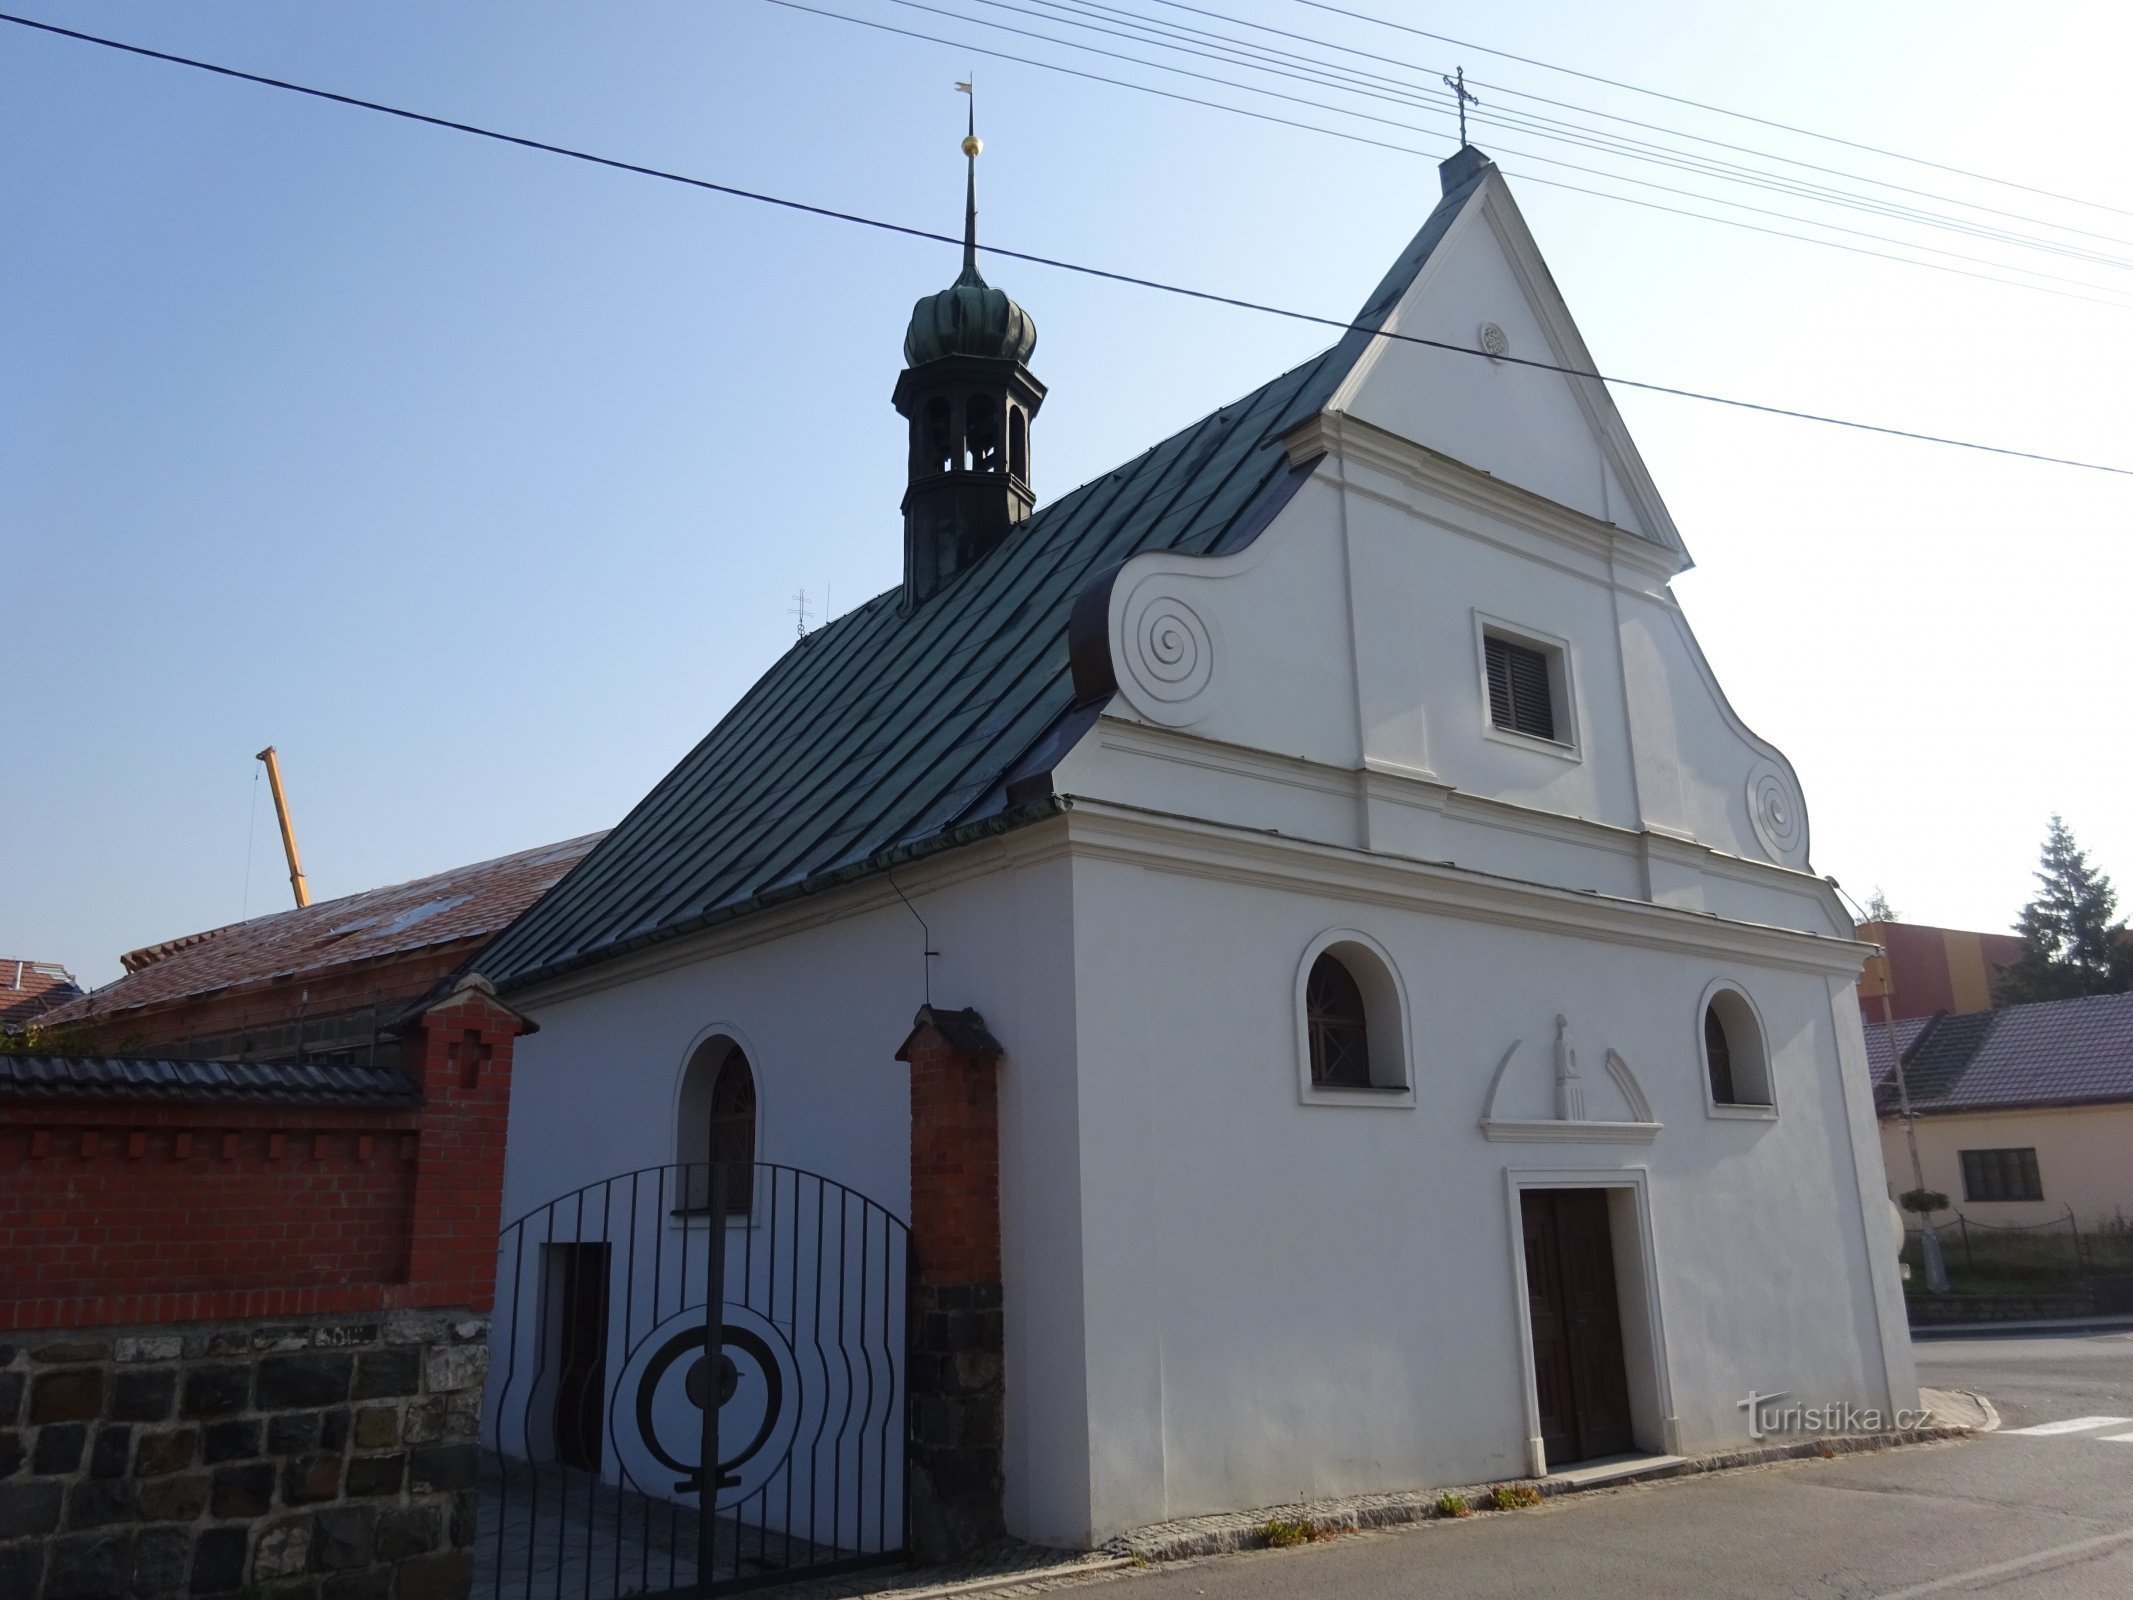 Odry - Szent István temető kápolna. Családok